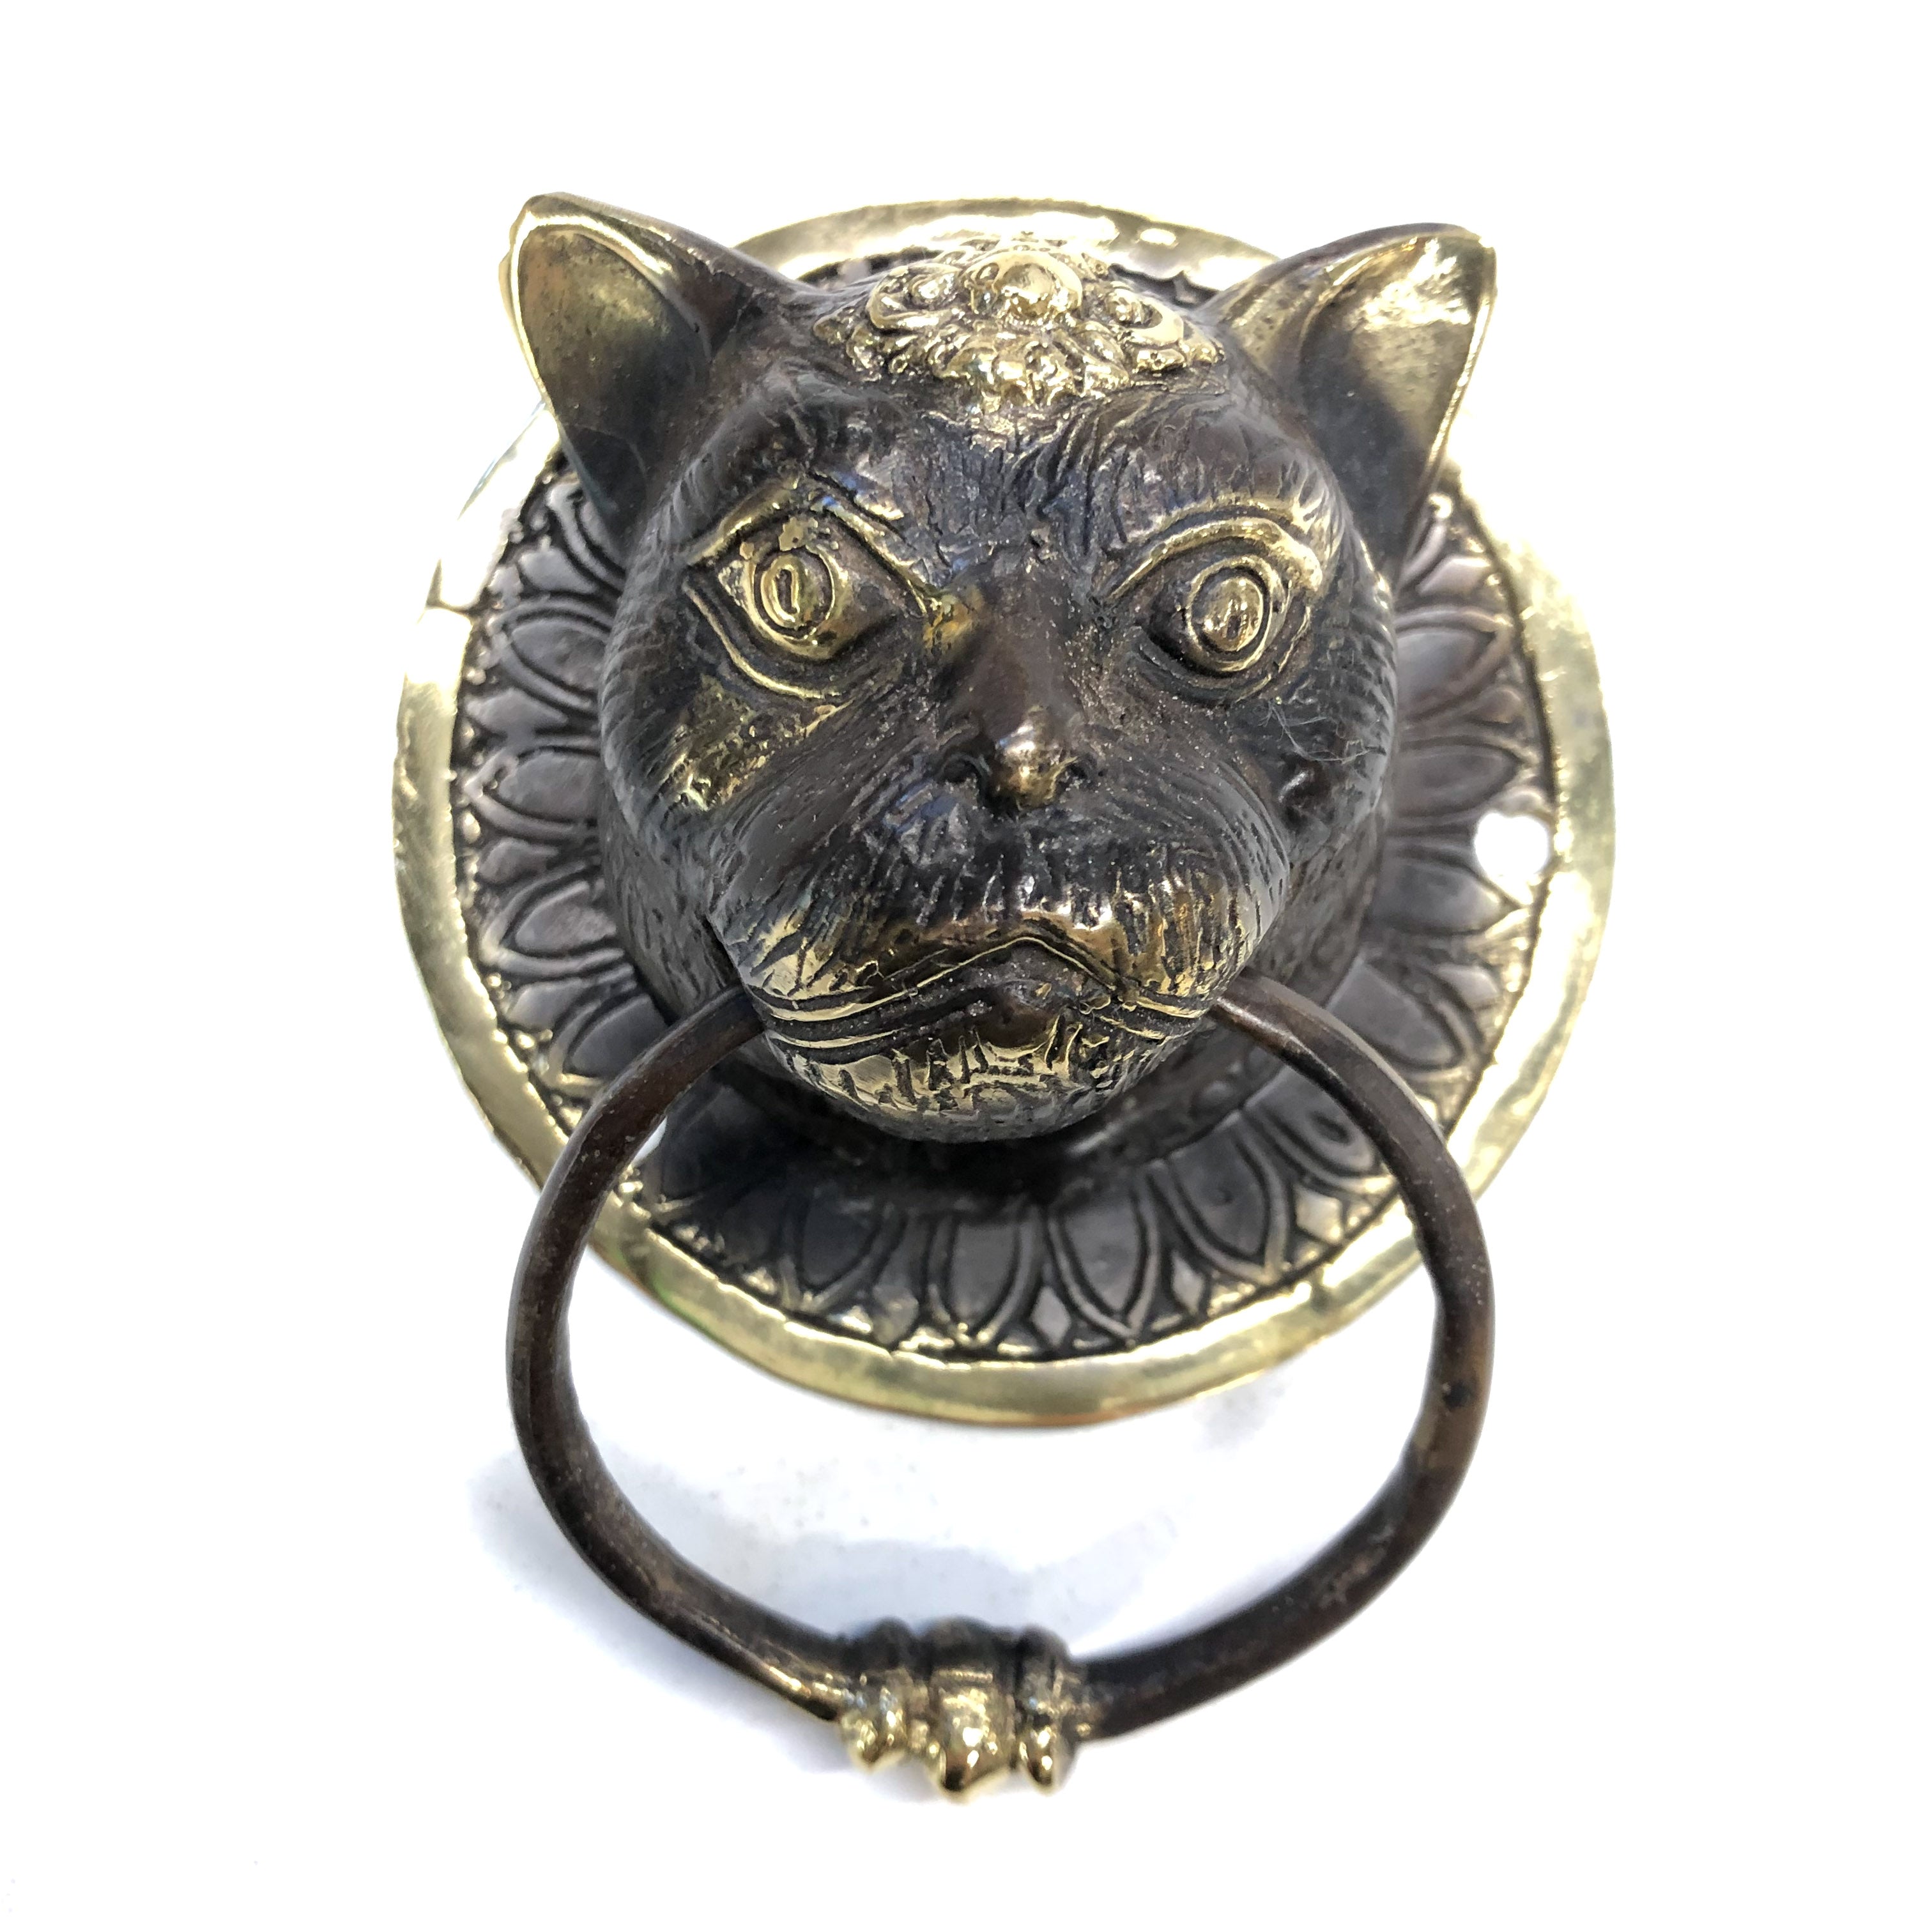 Bronze Cat Door Knocker - Hanging Catch-All, Towel Ring – Well Done Goods,  by Cyberoptix